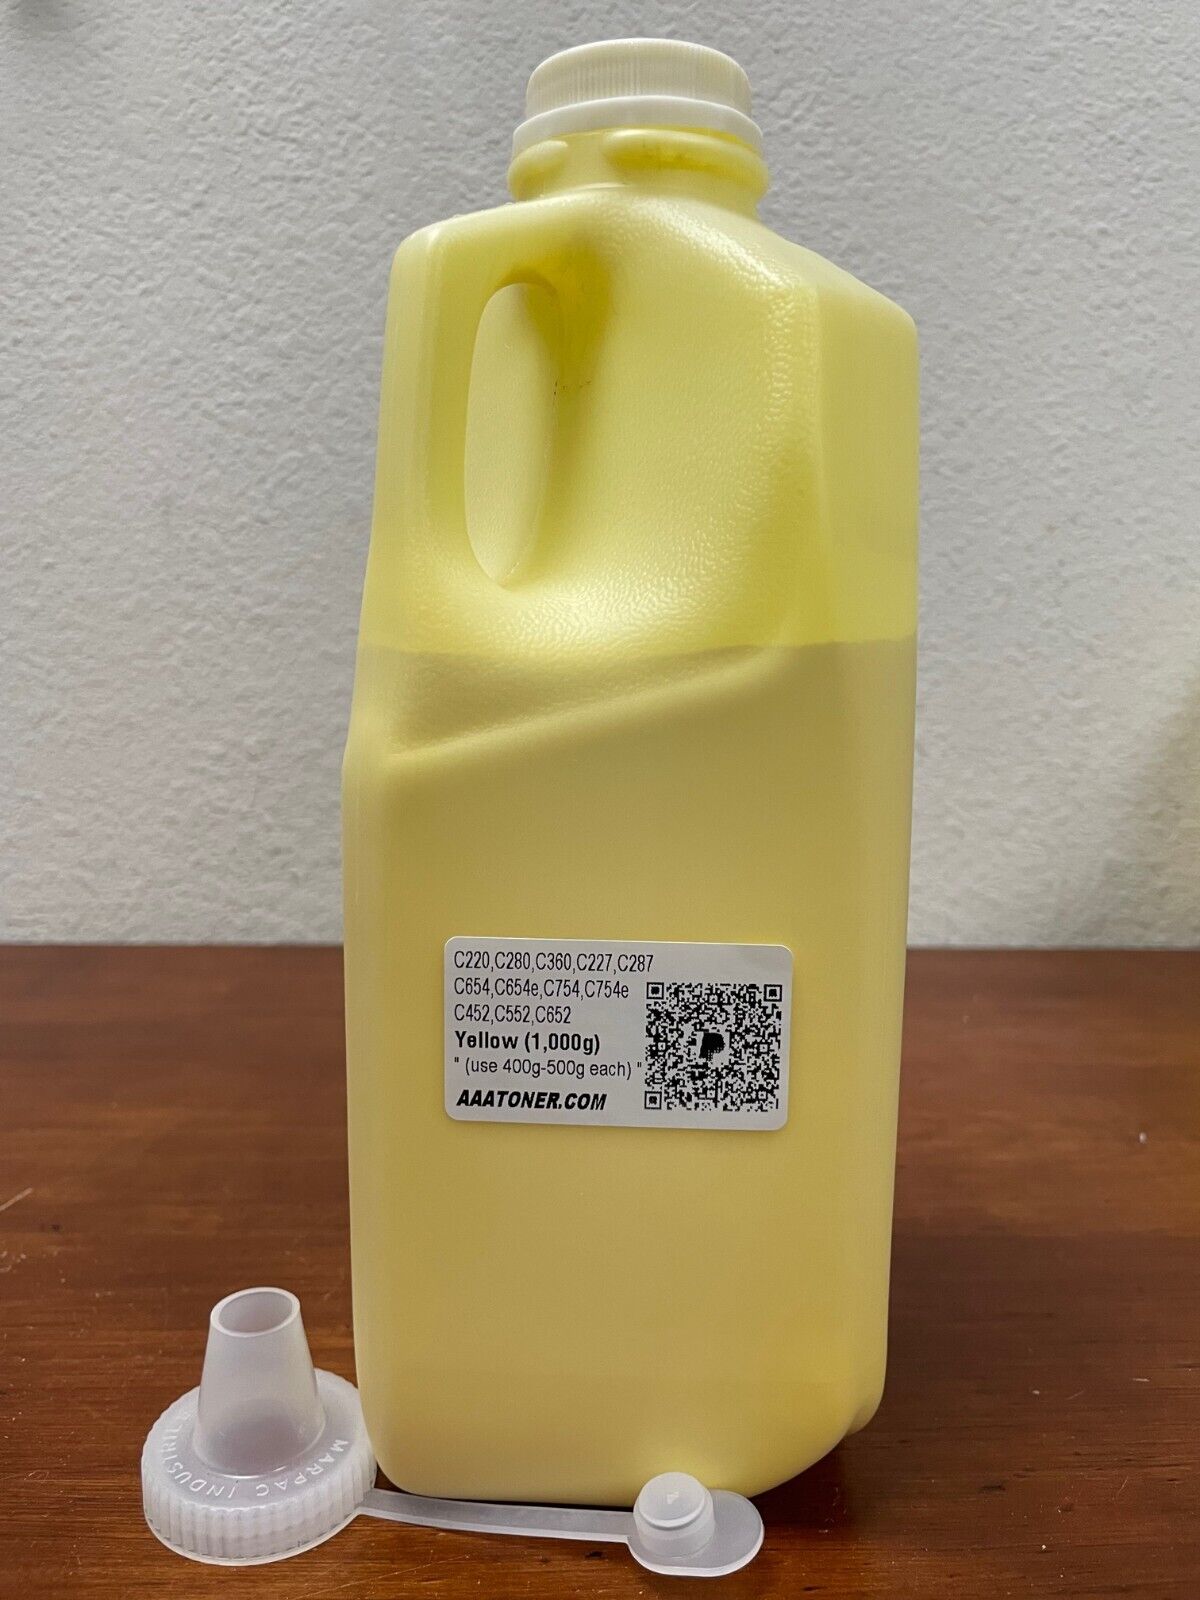 (1,000g) Yellow Toner Refill for Bizhub C654 C754 C659 C759 C220 C280 360 287